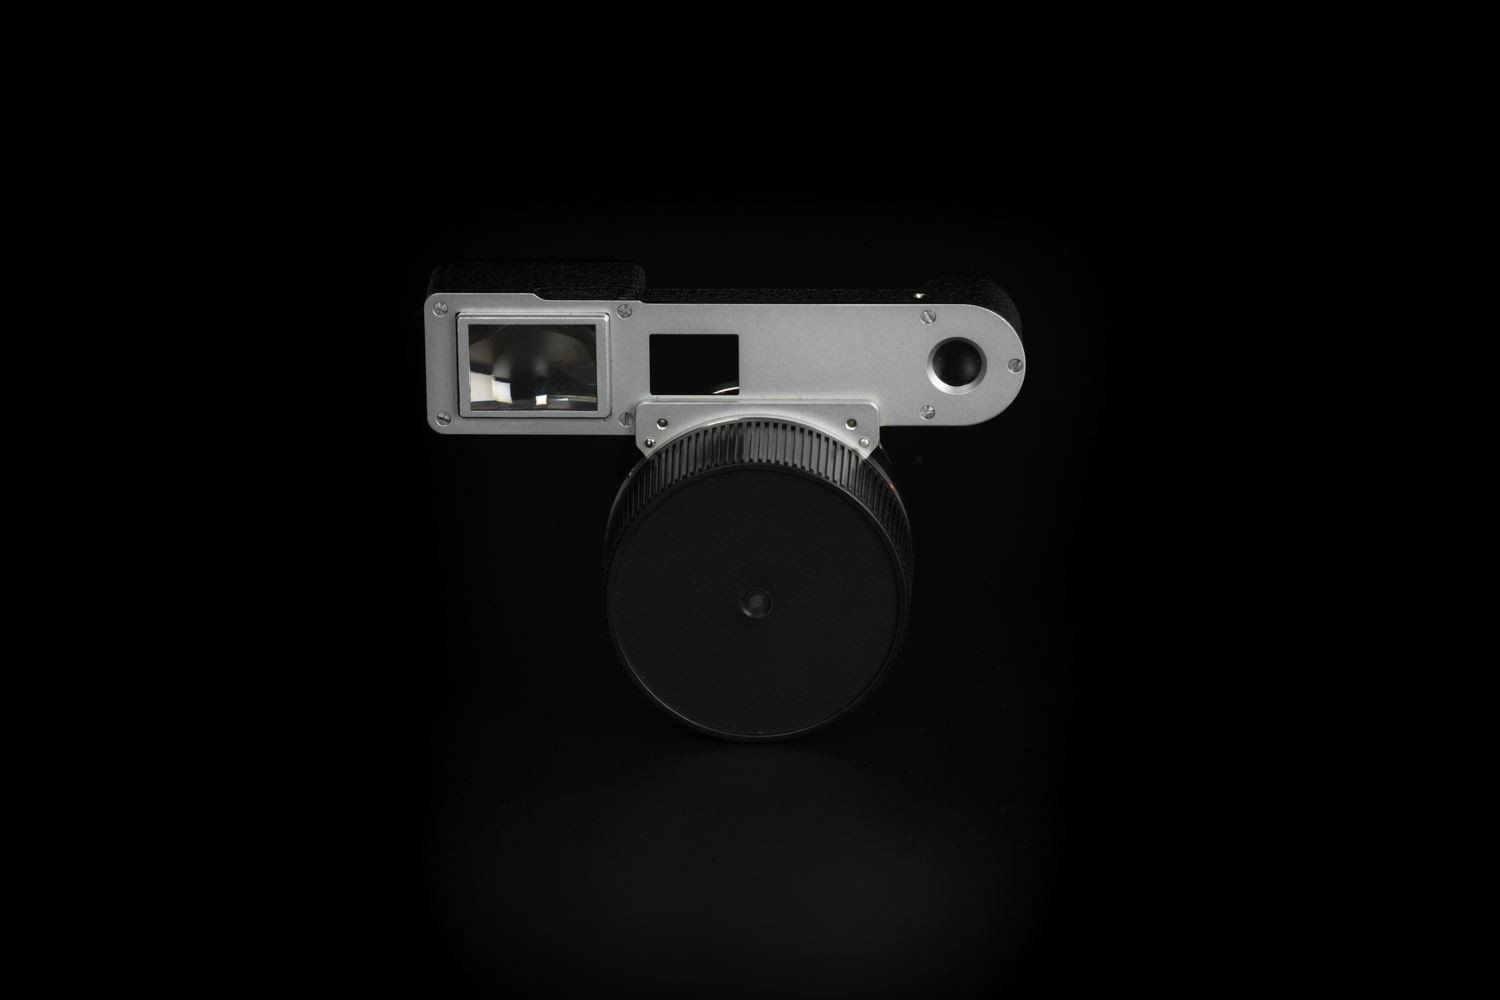 Picture of Leica Summilux-M 35mm f/1.4 Ver.1 Steel Rim Black Paint M3